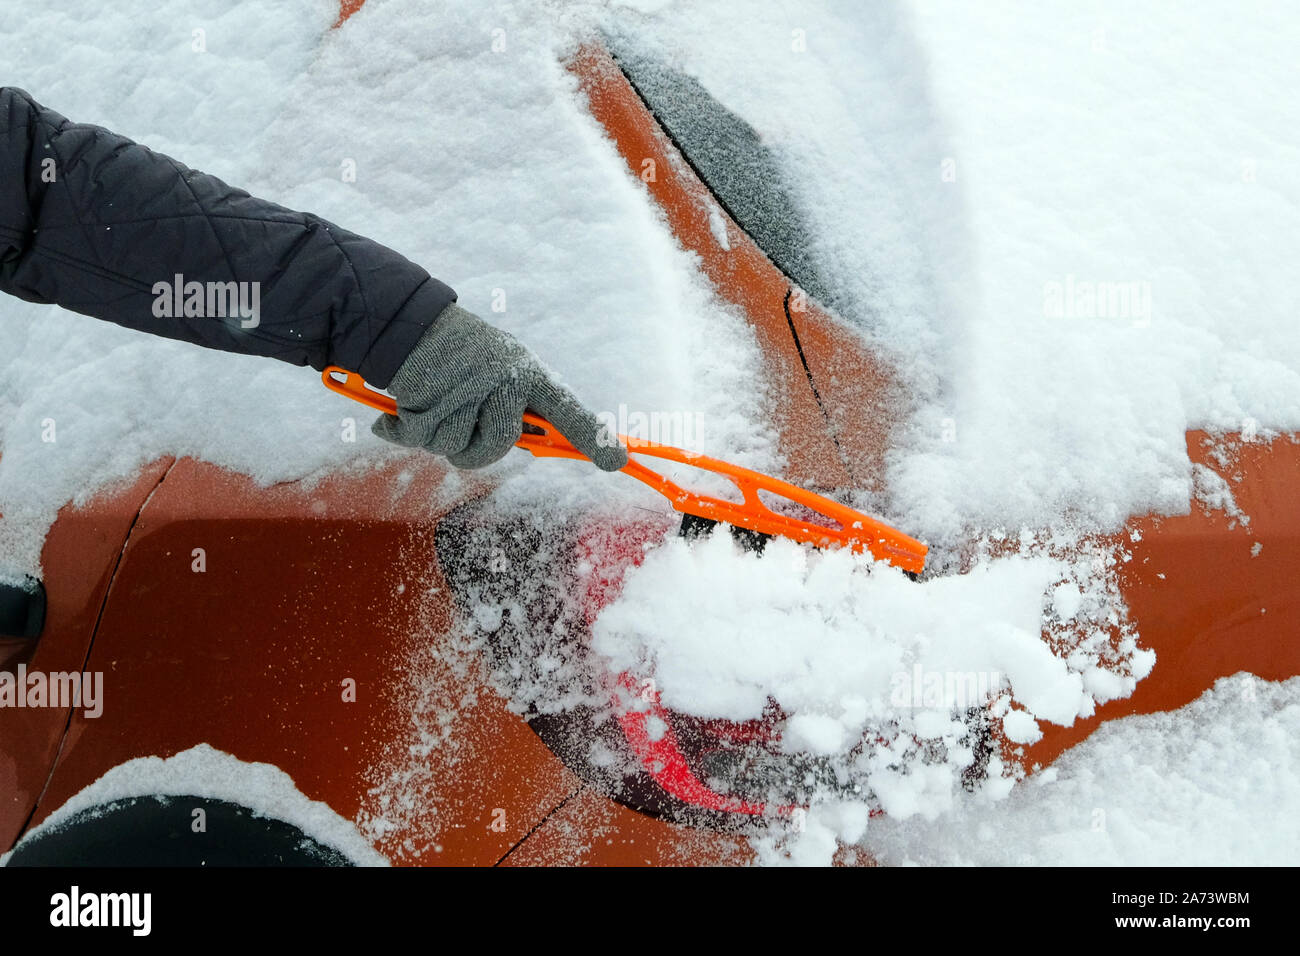 Orange efface l'homme voiture de neige sur une froide journée d'hiver après la neige. Pinceau en main. mans Beaucoup de neige sur la voiture. Banque D'Images